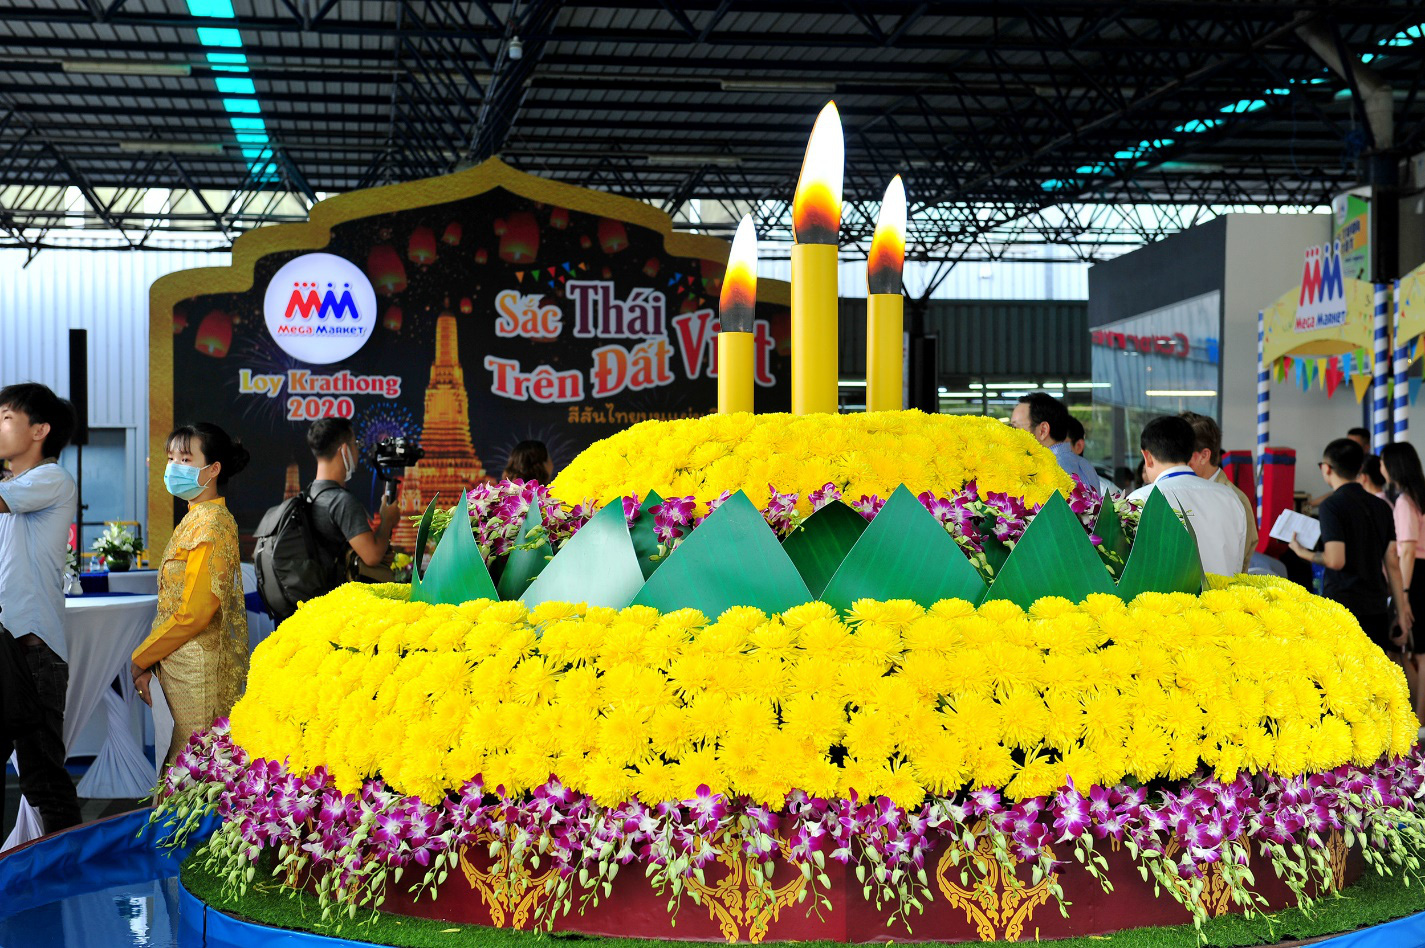 Đến MM Mega Market: Trải nghiệm lễ hội thả đèn và mua hàng Thái với giá hấp dẫn - Ảnh 1.